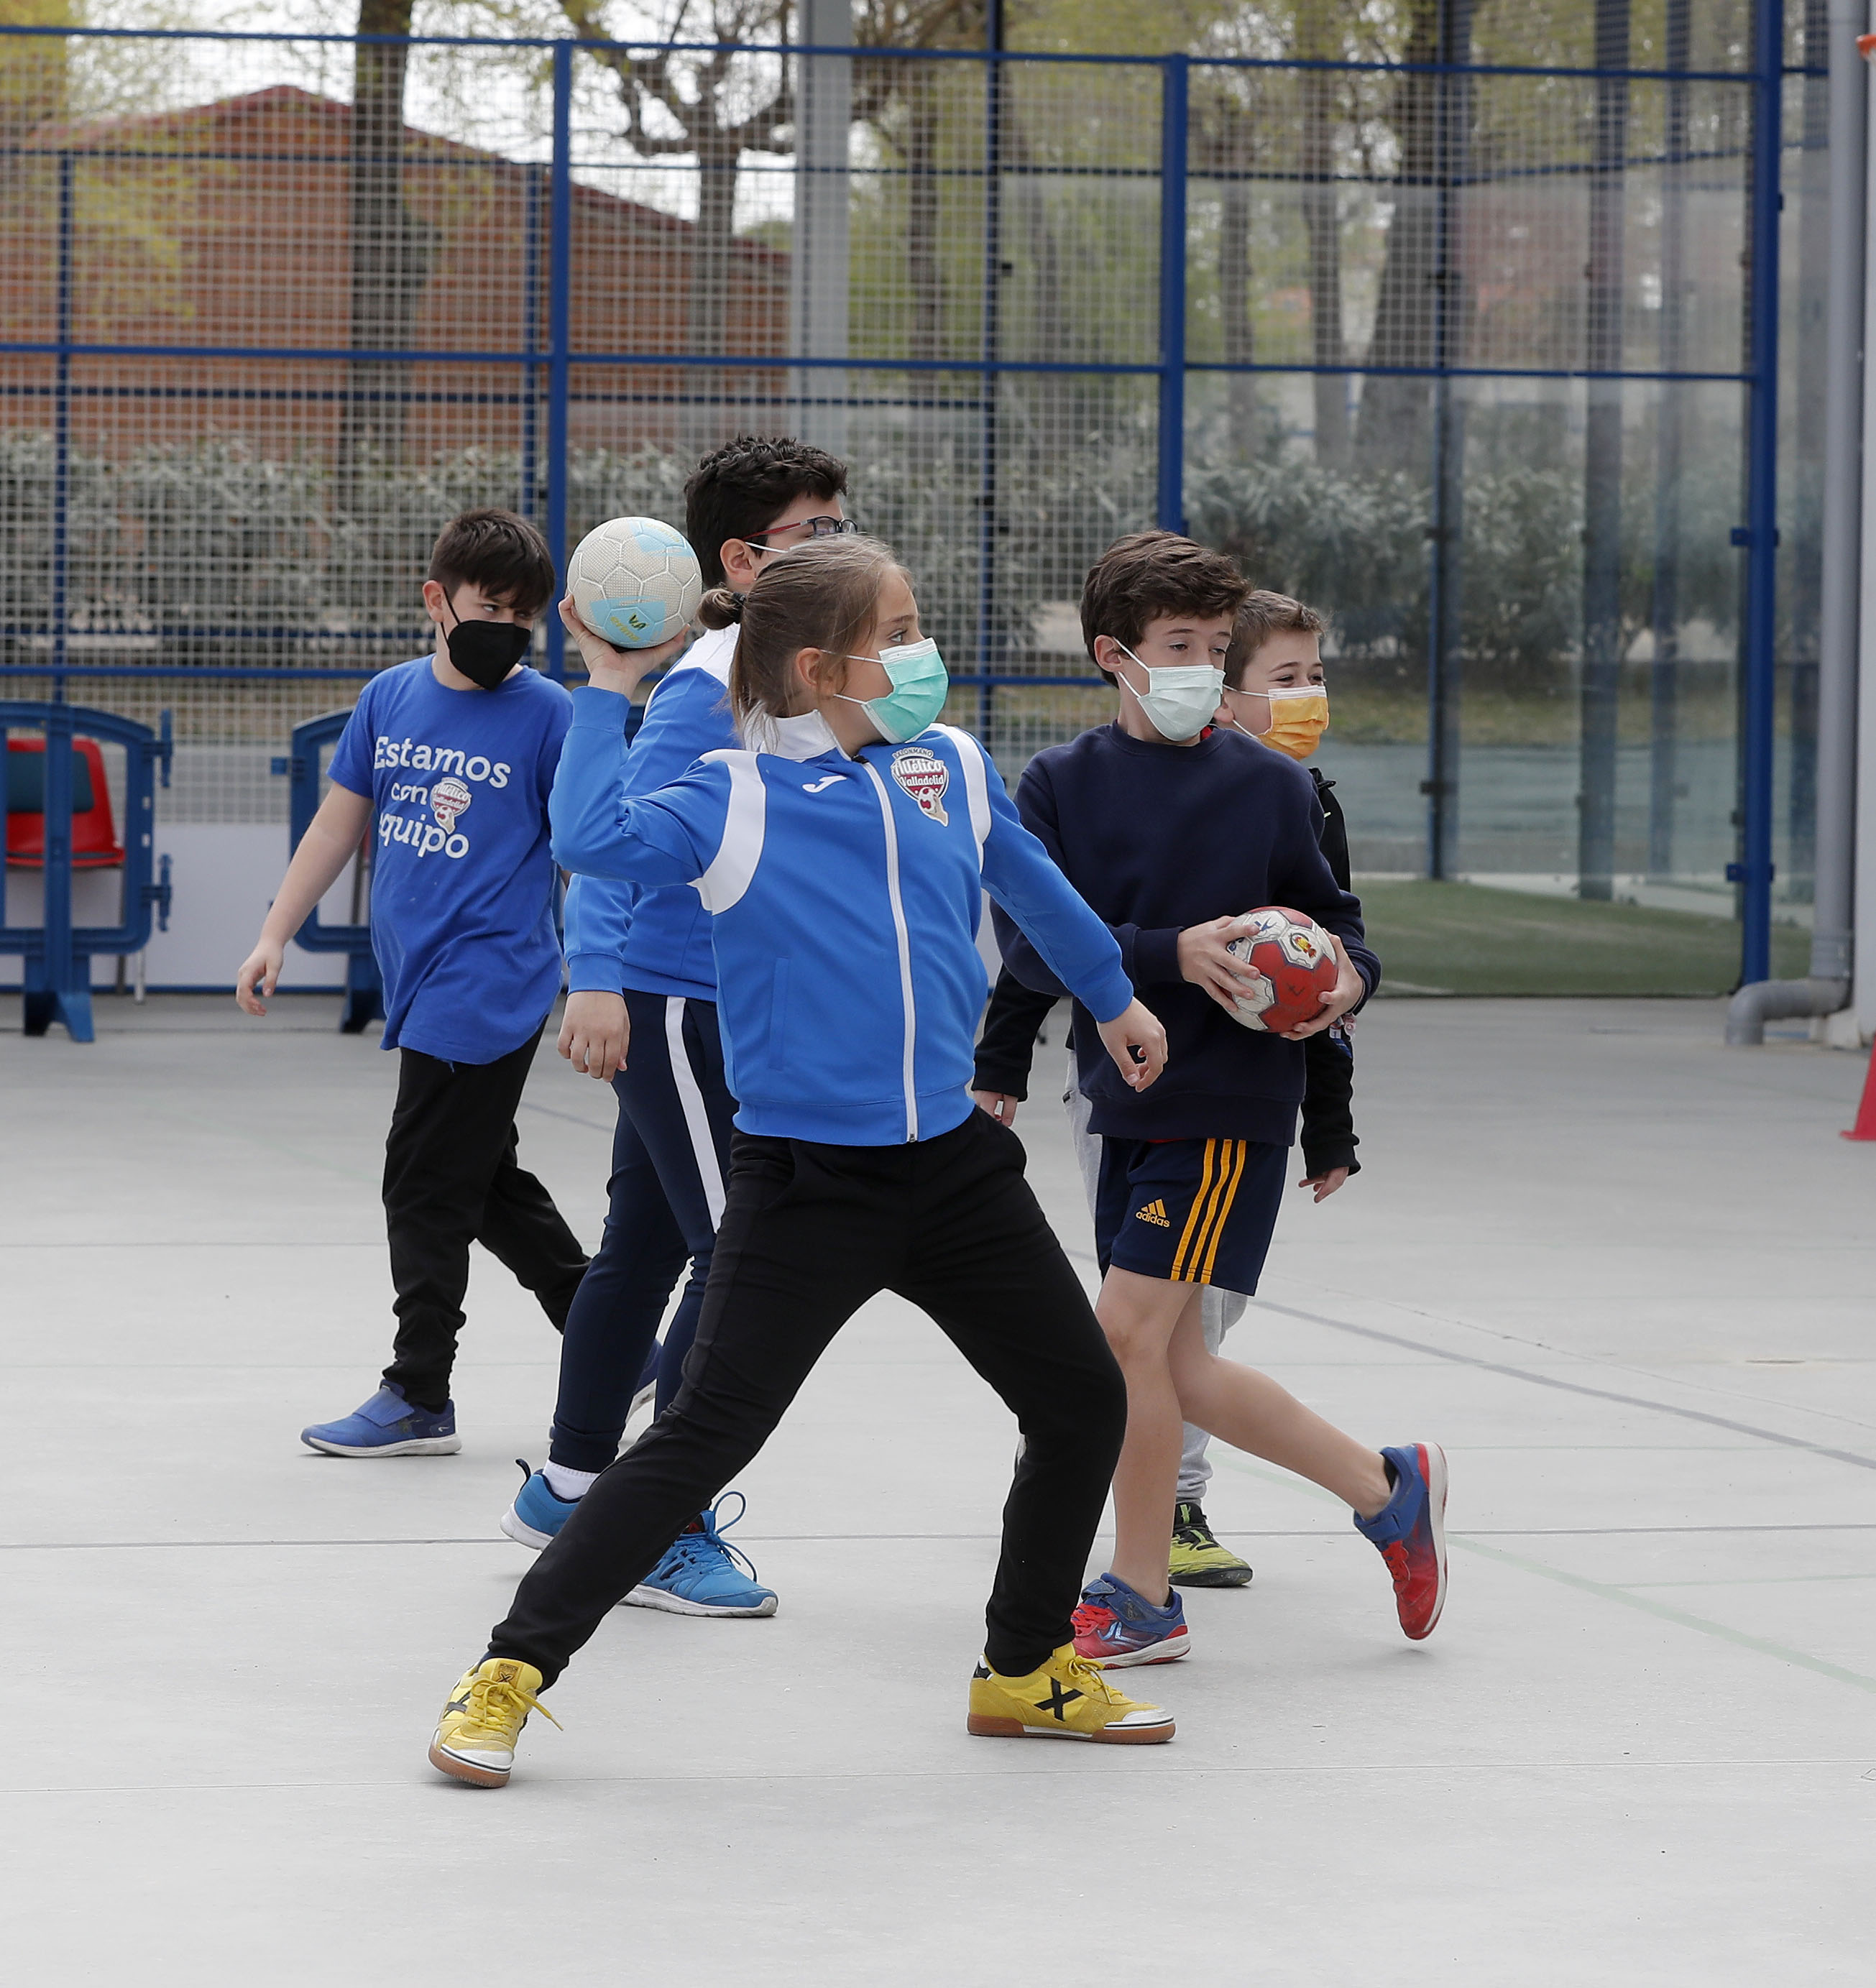 Formación, diversión y mucho balonmano en el Campus Deportivo de Semana Santa del Recoletas Atlético Valladolid | Galería 3 / 8